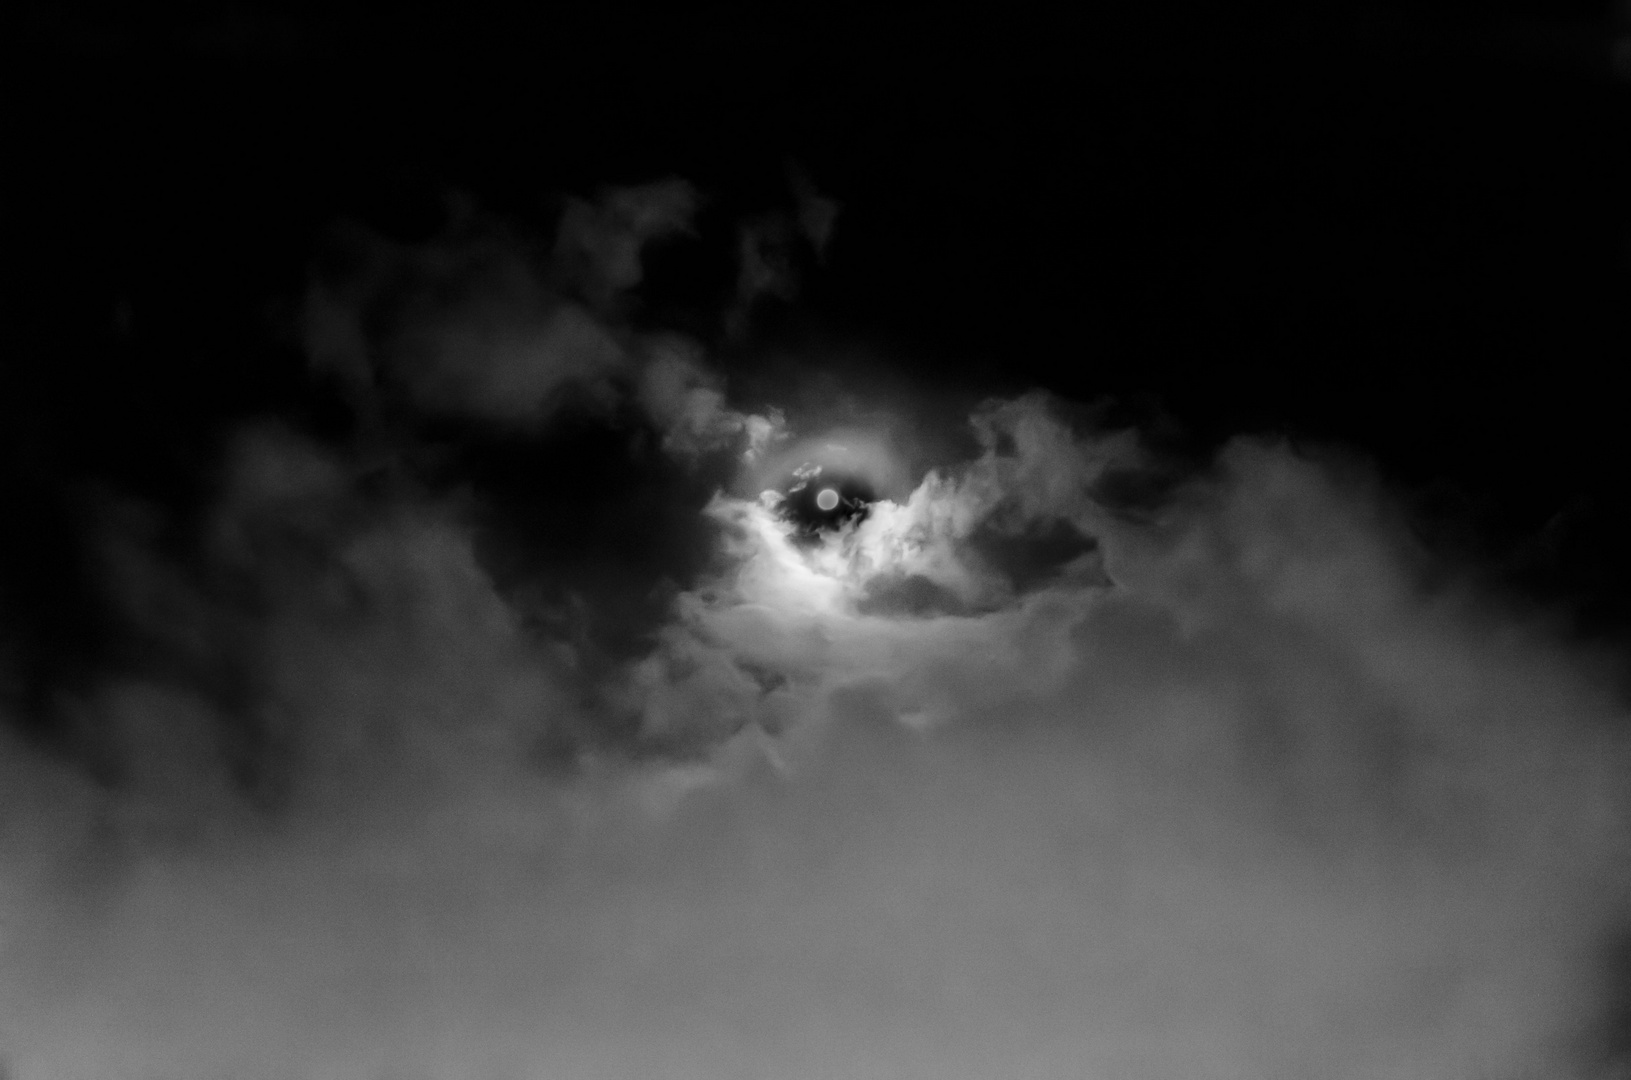 Nubes con luna